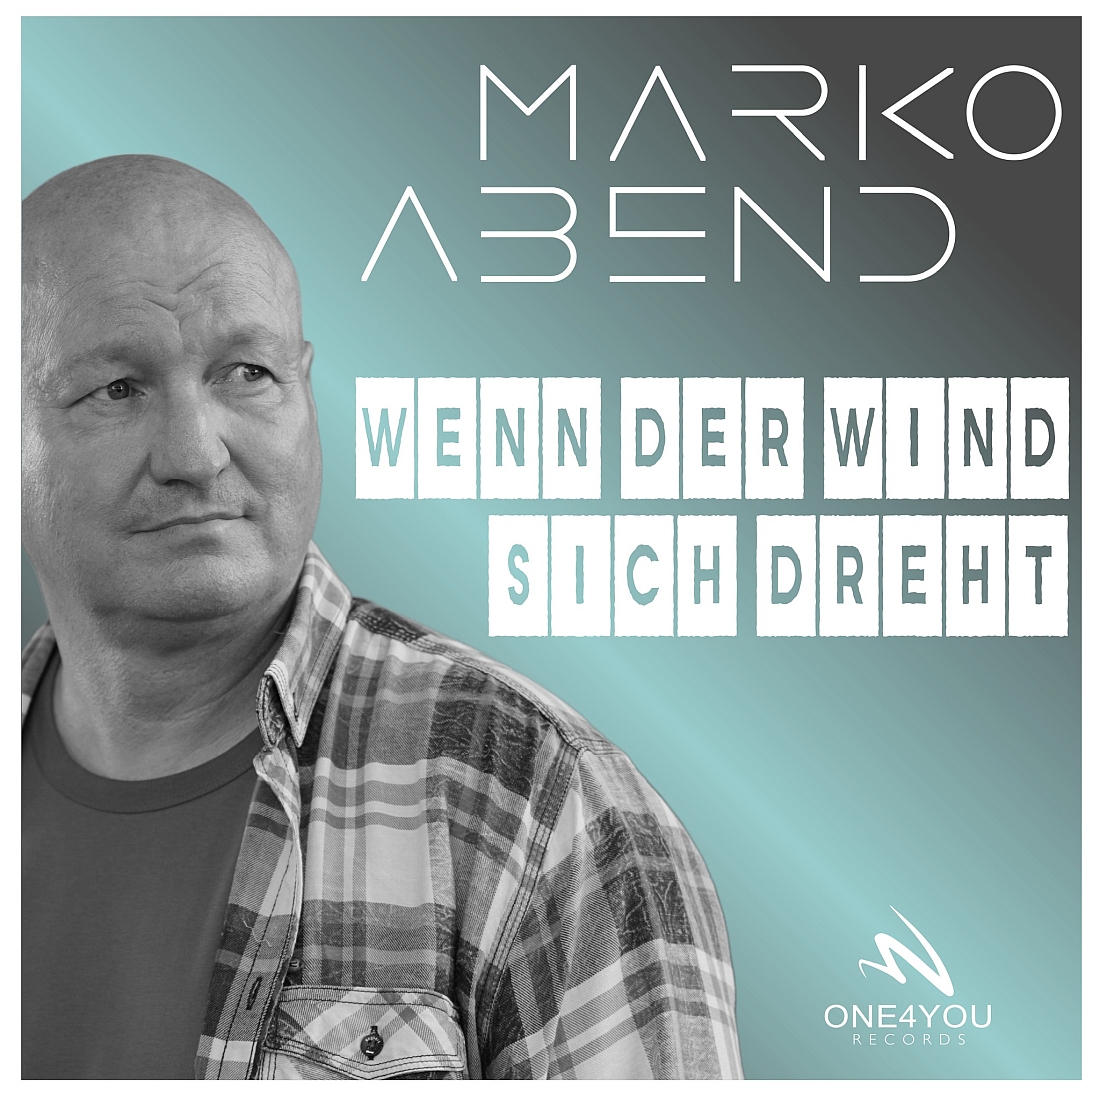 Marko Abend - Wenn der Wind sich dreht (ONE4YOU RECORDS)